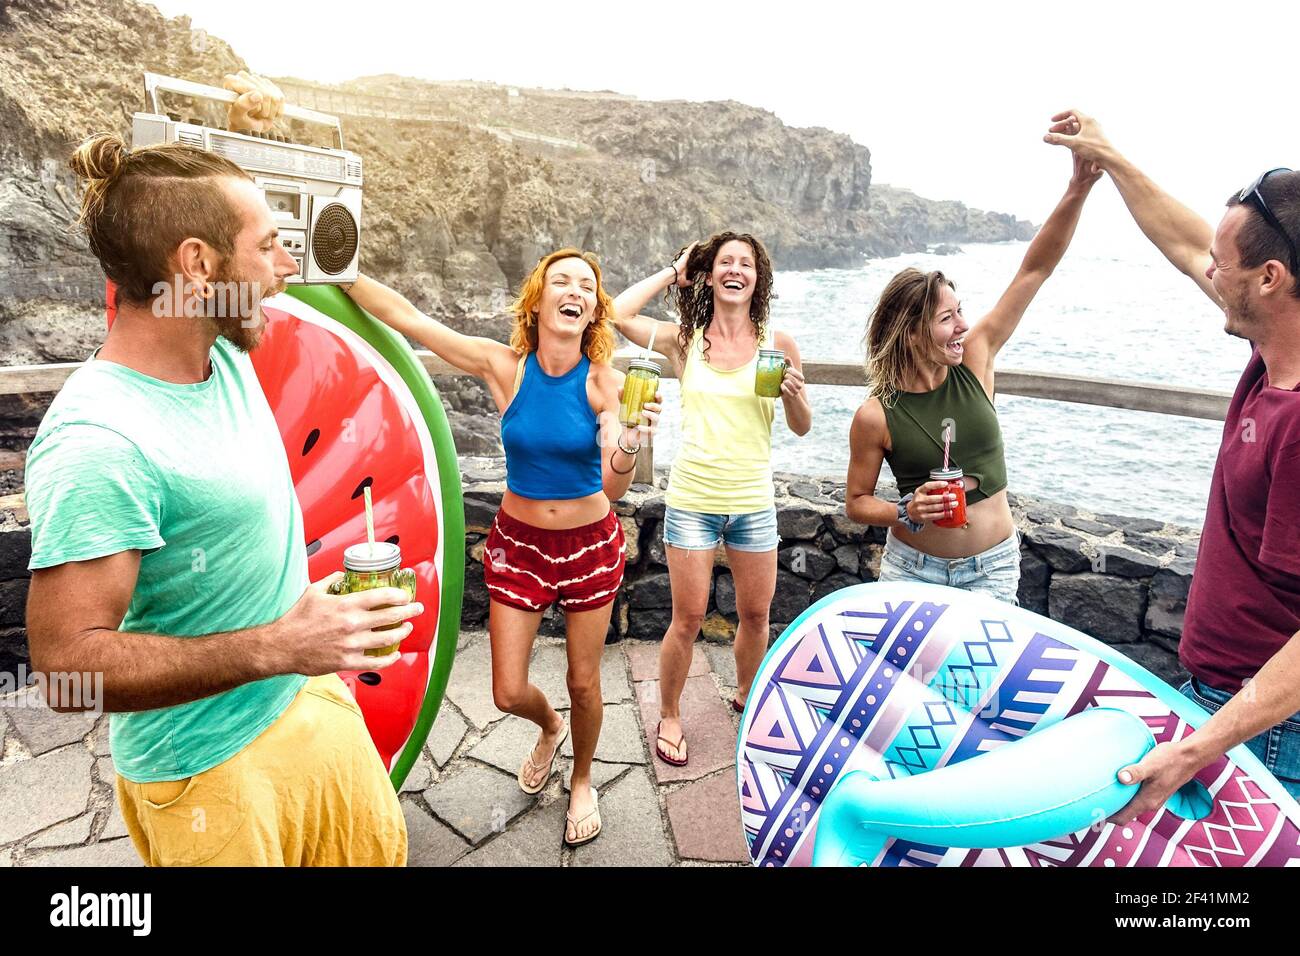 Les jeunes amis vacanciers s'amusent à la piscine naturelle en voyage Emplacement - des millenial heureux dansant et buvant des cocktails à autre plage Banque D'Images